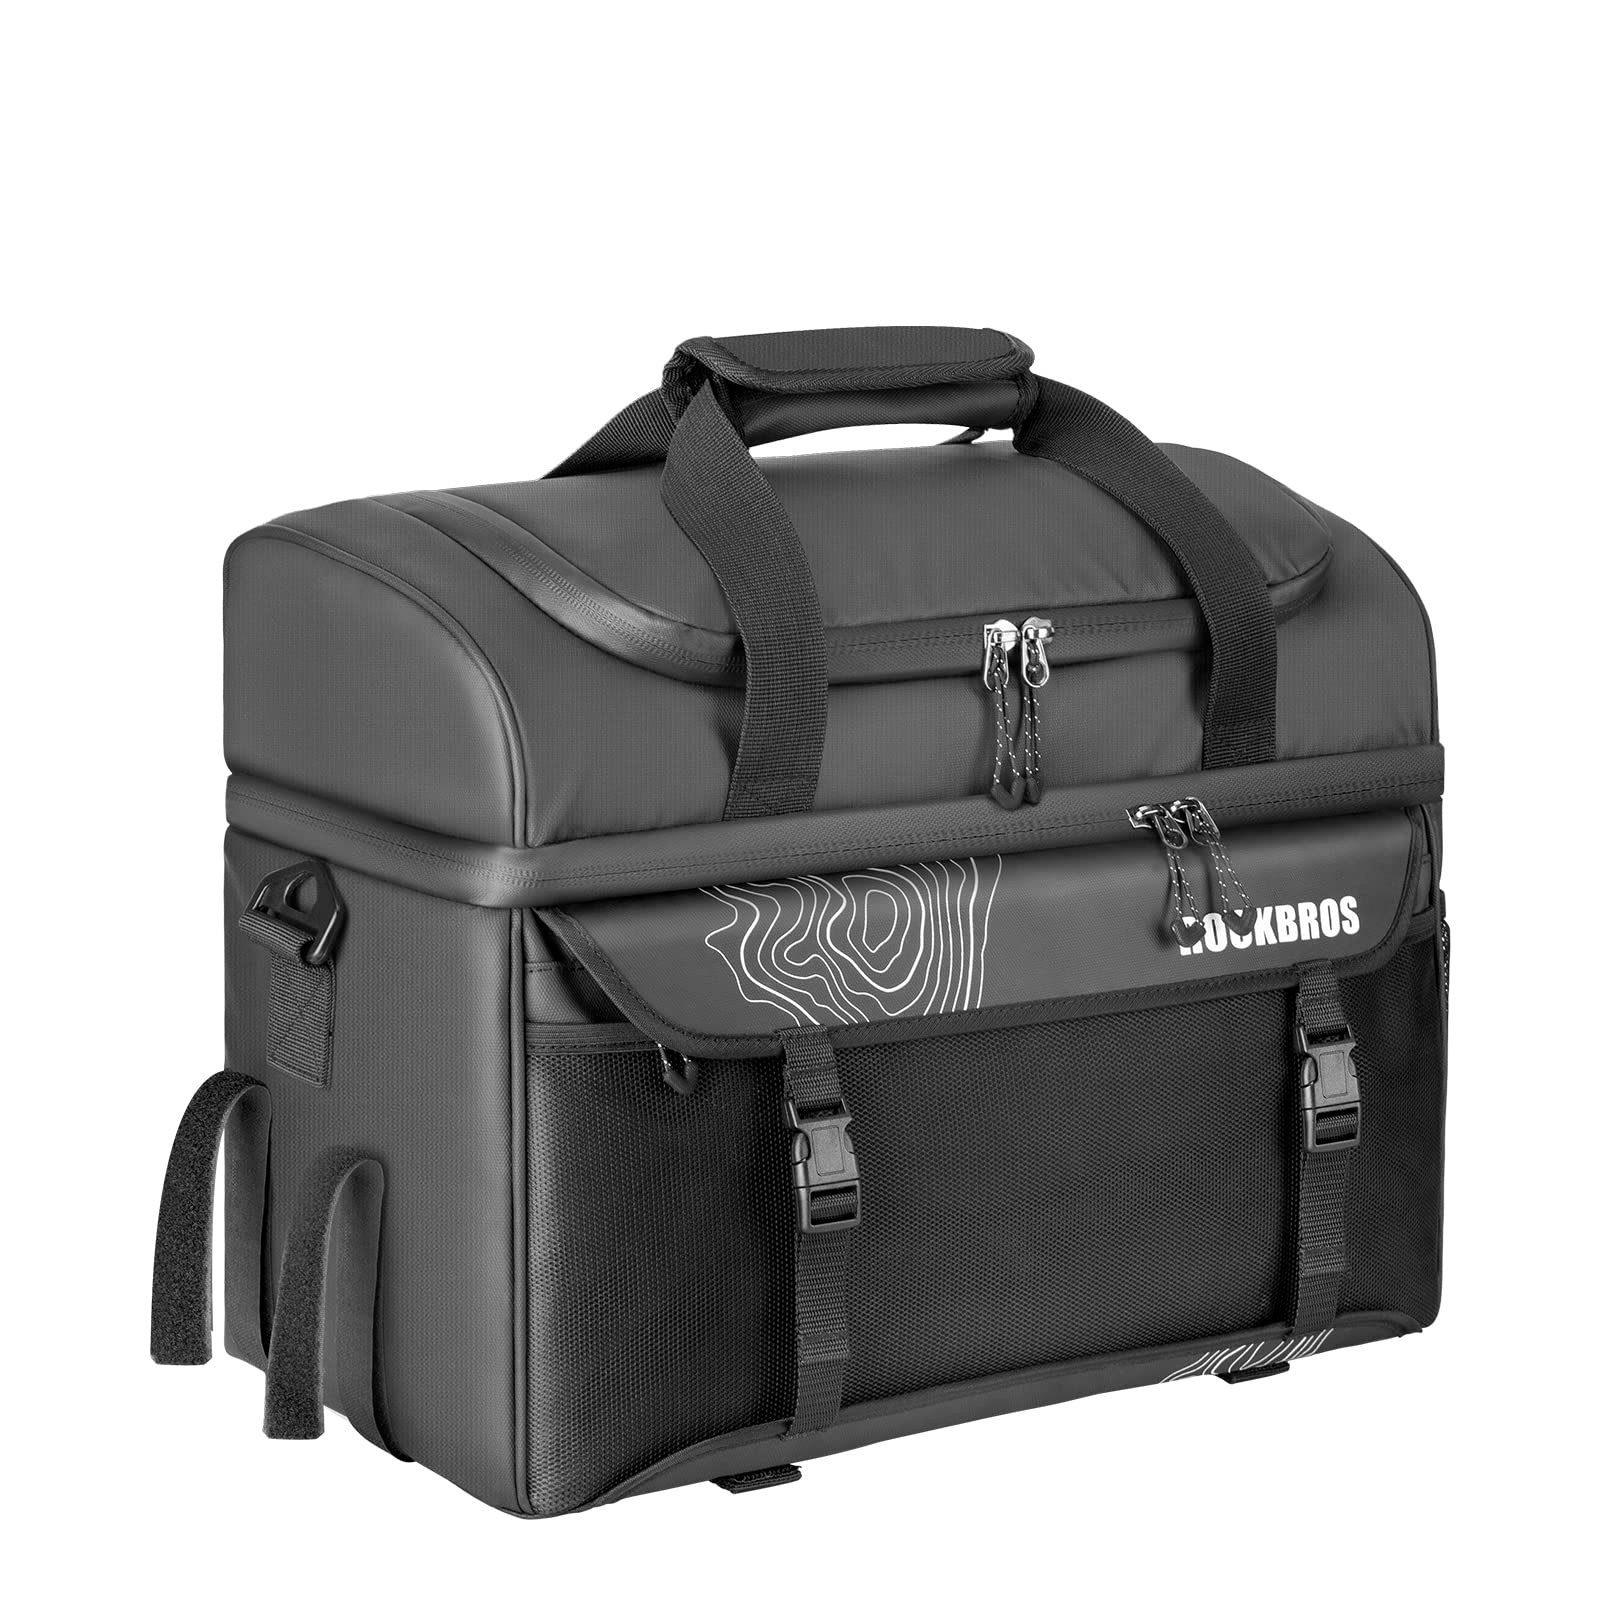 HIIERO Tragetasche HIIERO® Einsatztasche Tasche Hunterbag Security